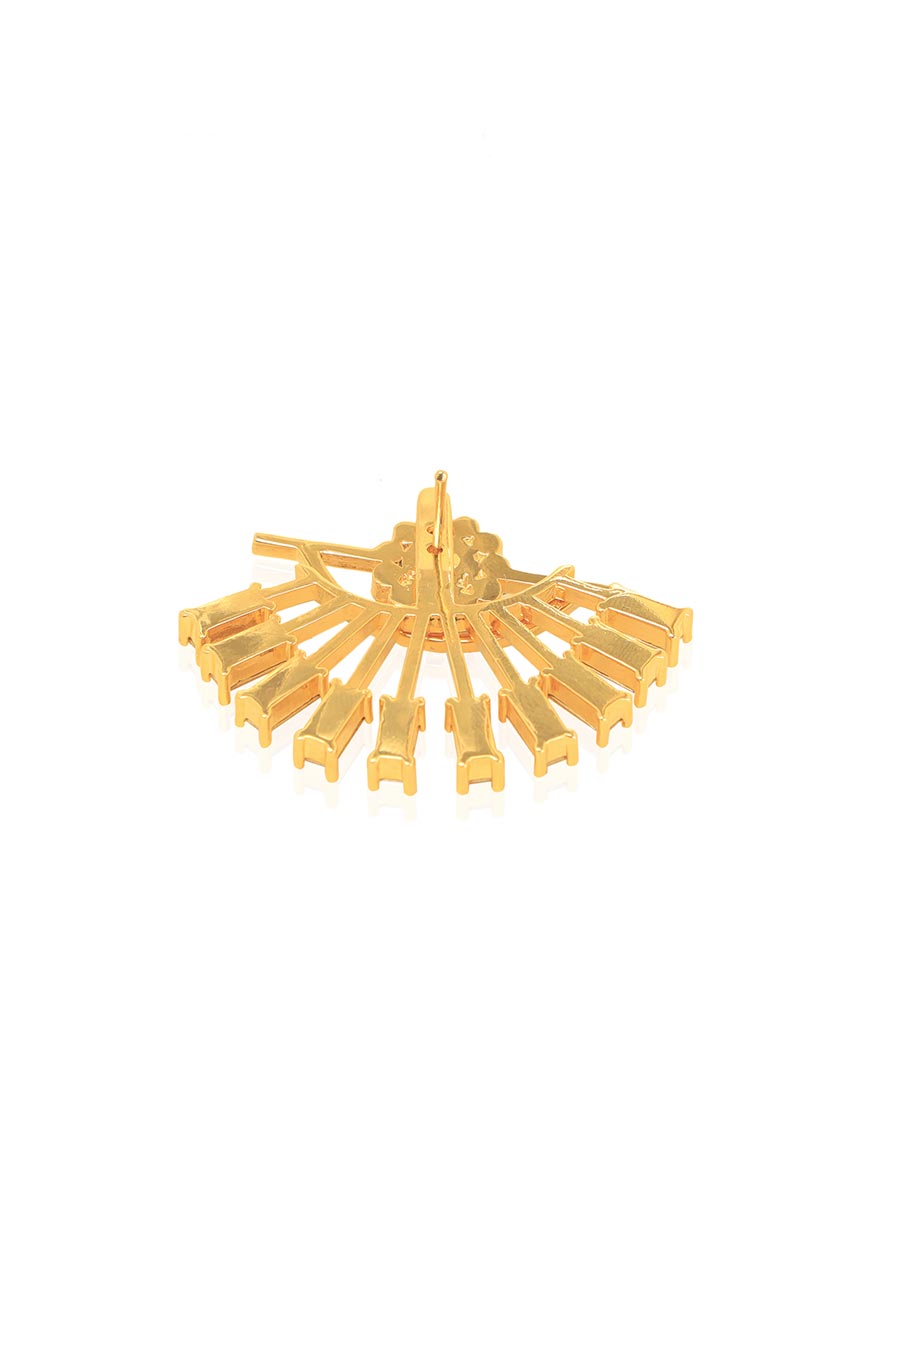 Cananry Detachable Gold Swarovski Earrings